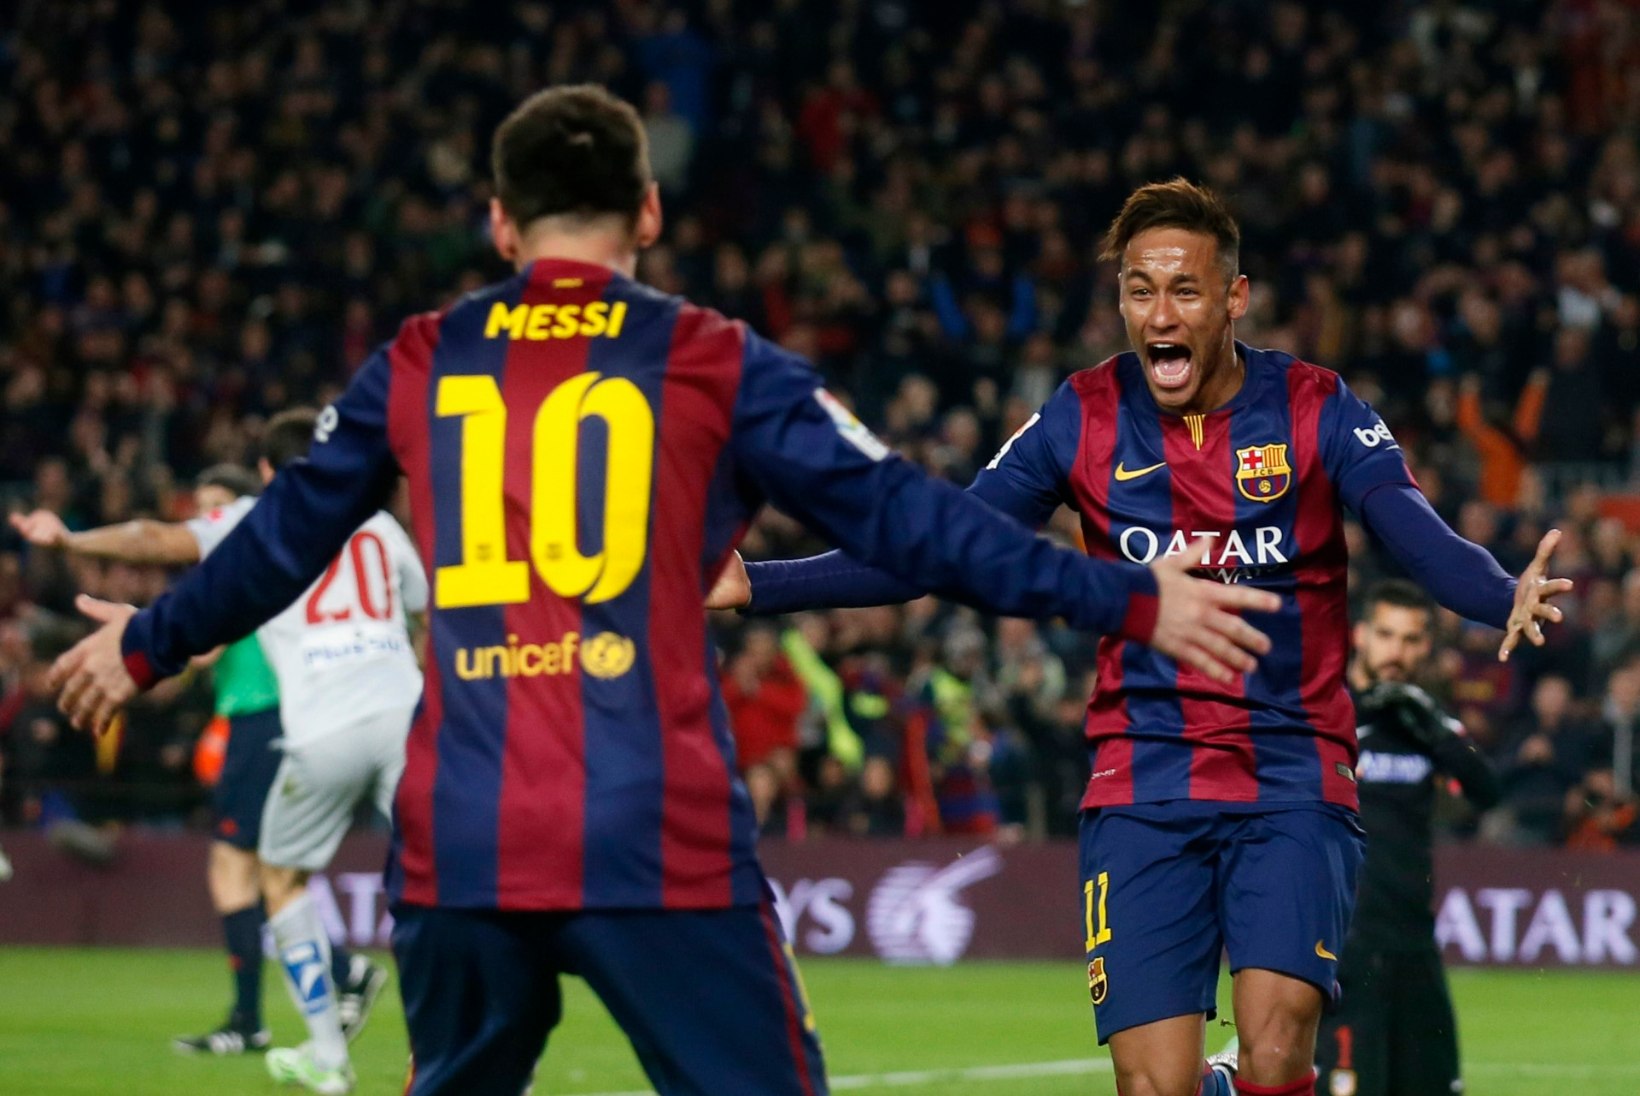 FOTOD JA VIDEO: Neymar, Suarez ja Messi kõik skoorisid ning Barcelona alistas Atletico!